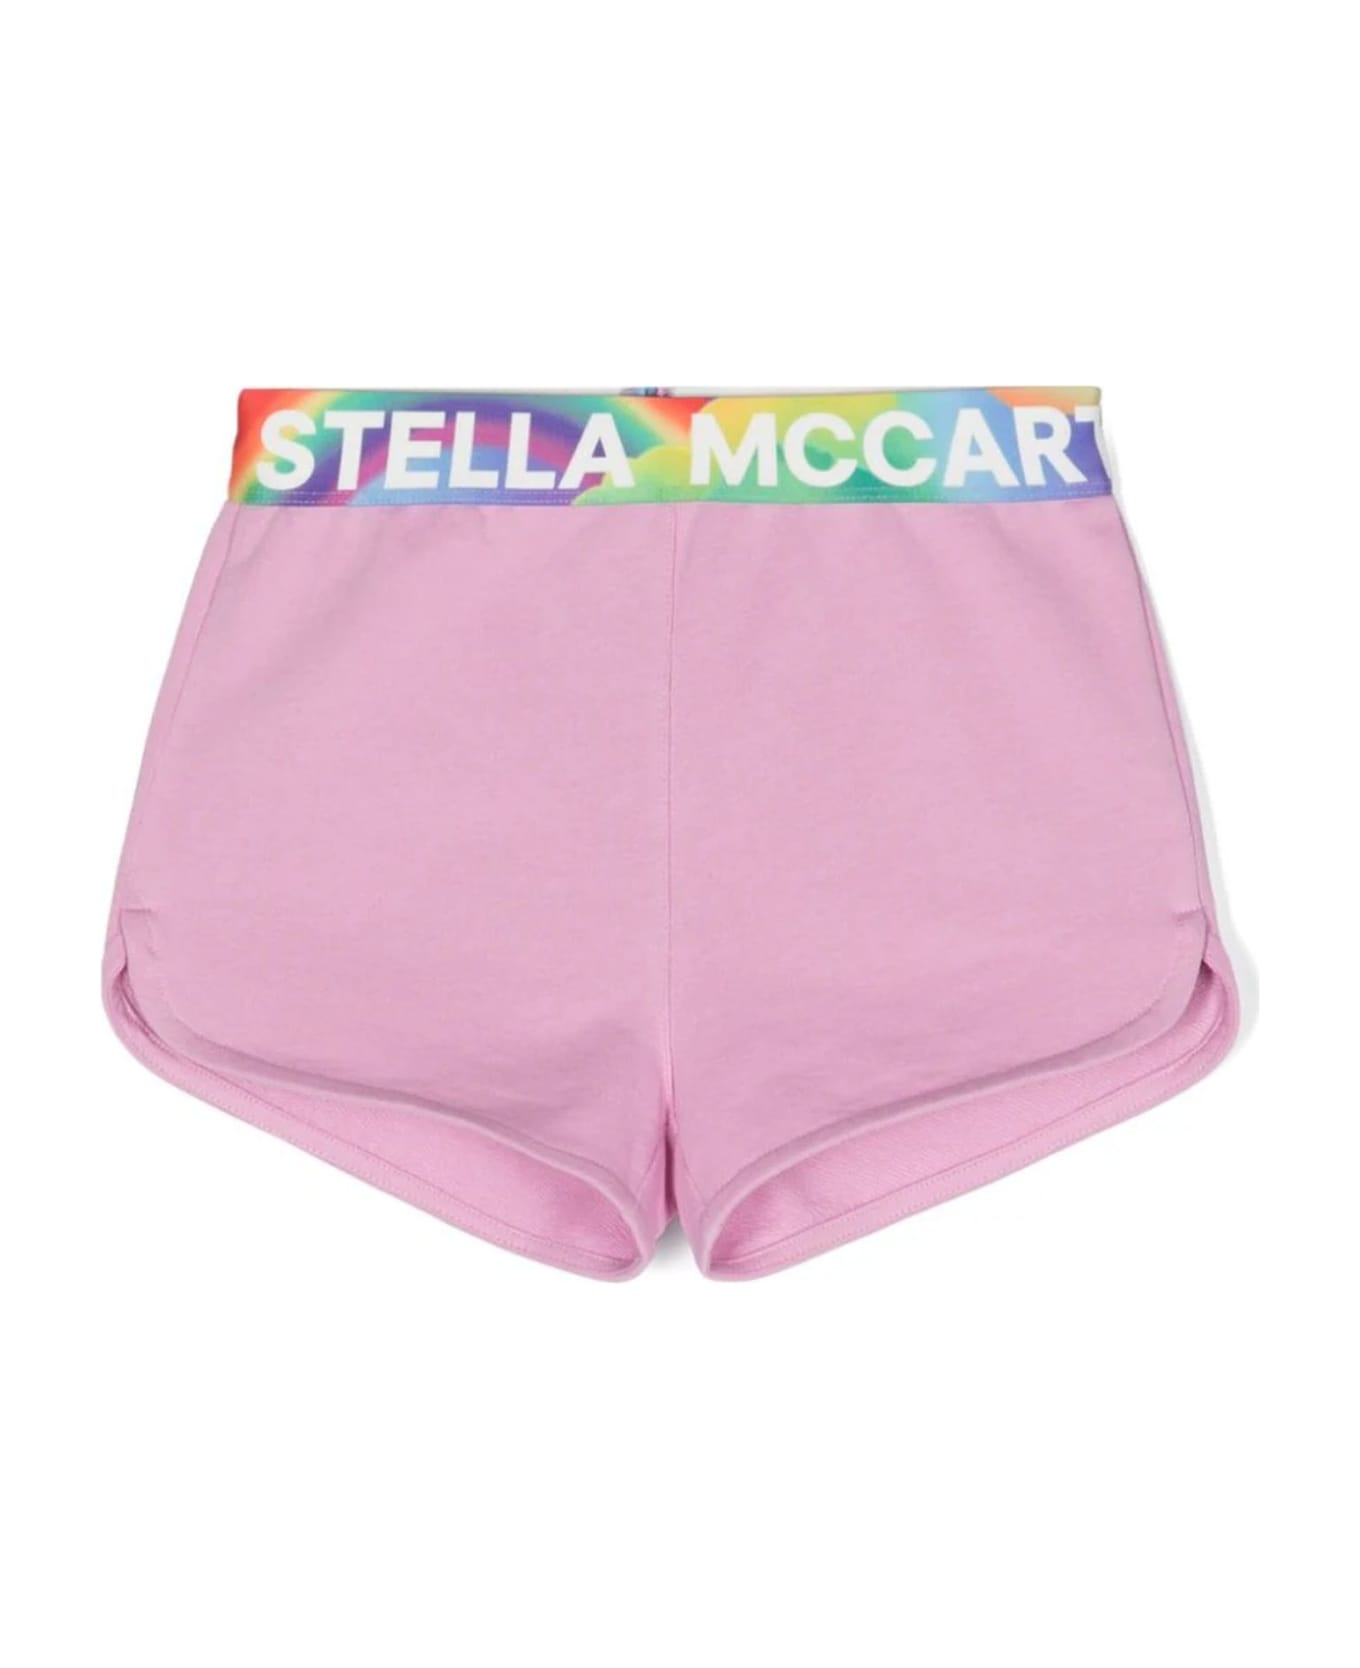 Stella McCartney Kids Shorts Pink - Pink